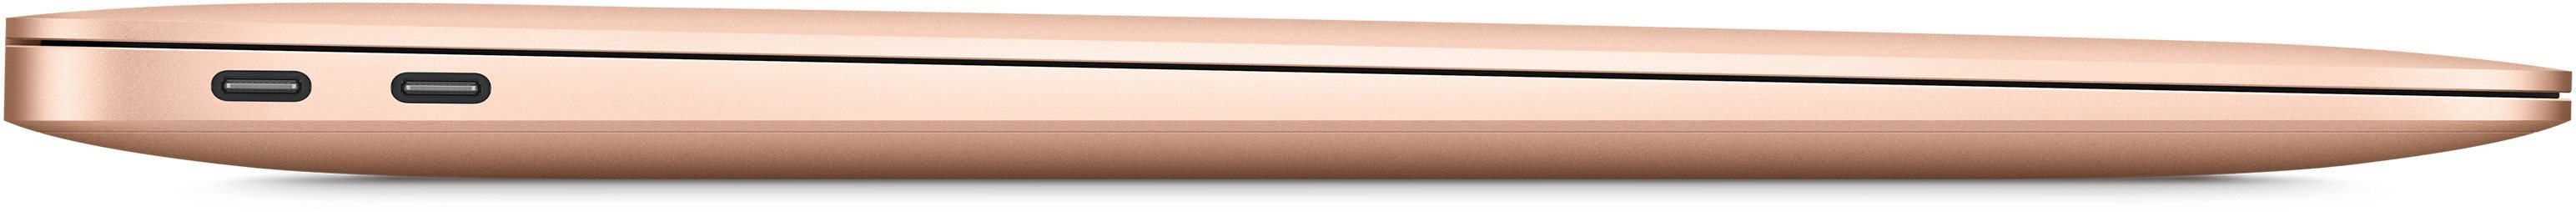 MacBook Air (2020) je velice tenk